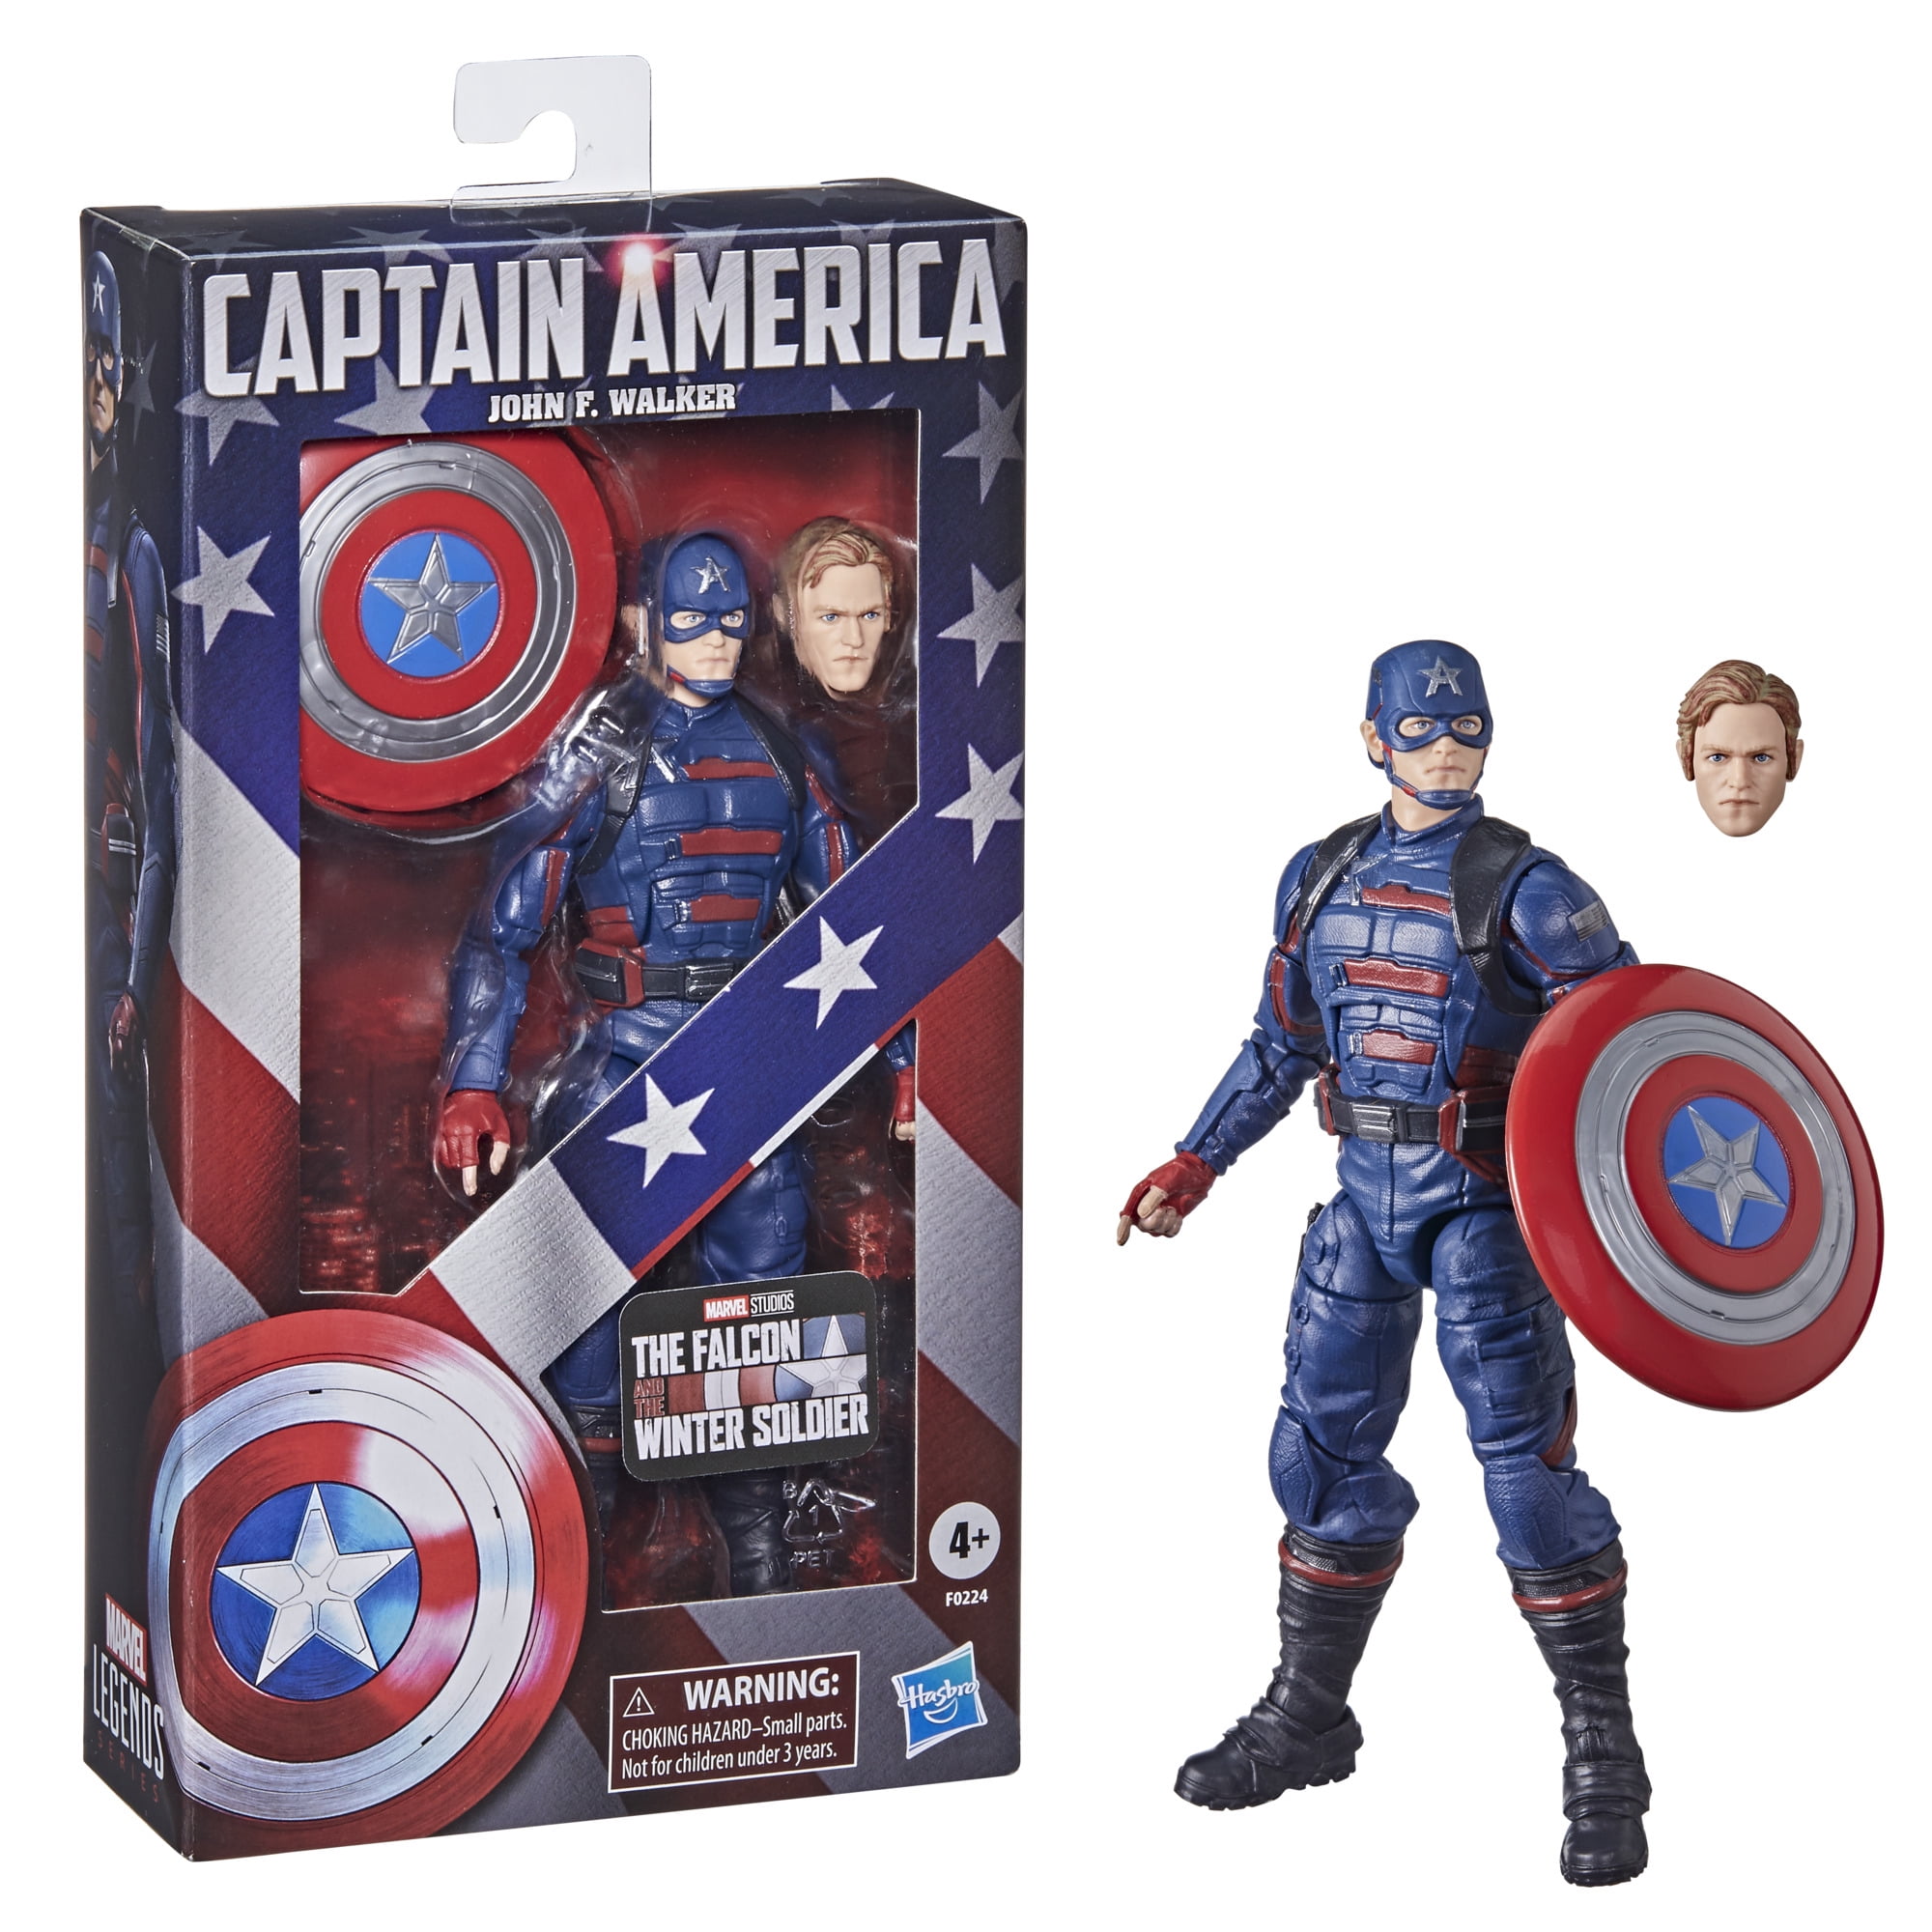 Marvel Legends Captain America Avengers Endgame 6" Action Figure Hasbro New 